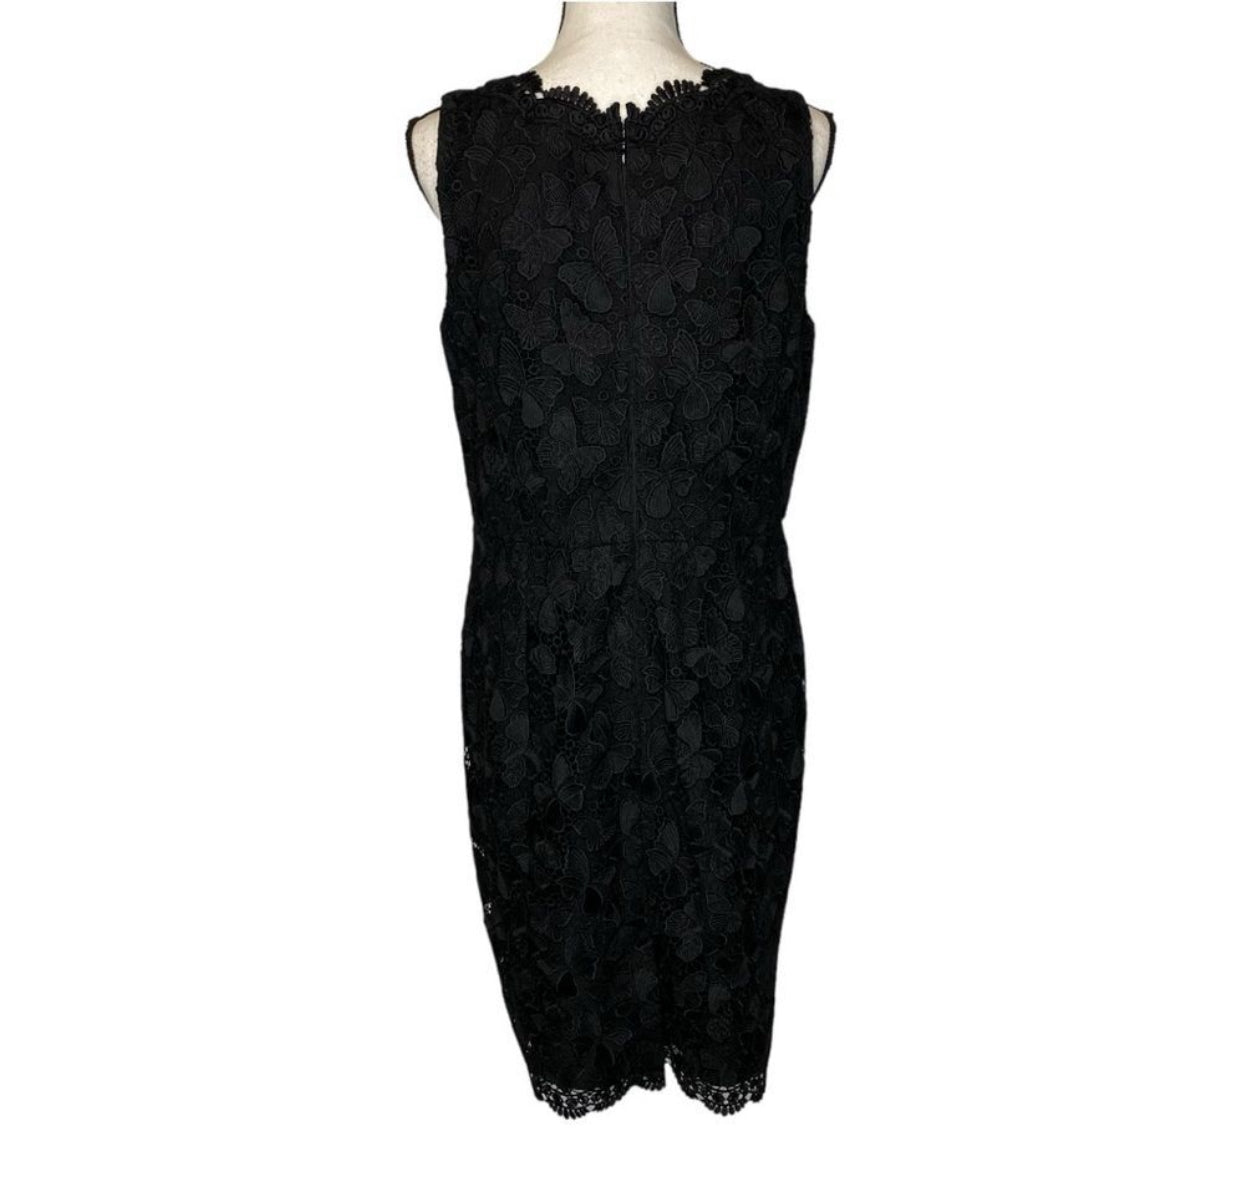 RSVP By Talbots Butterfly Black Lace Sheath Dress - Size 8